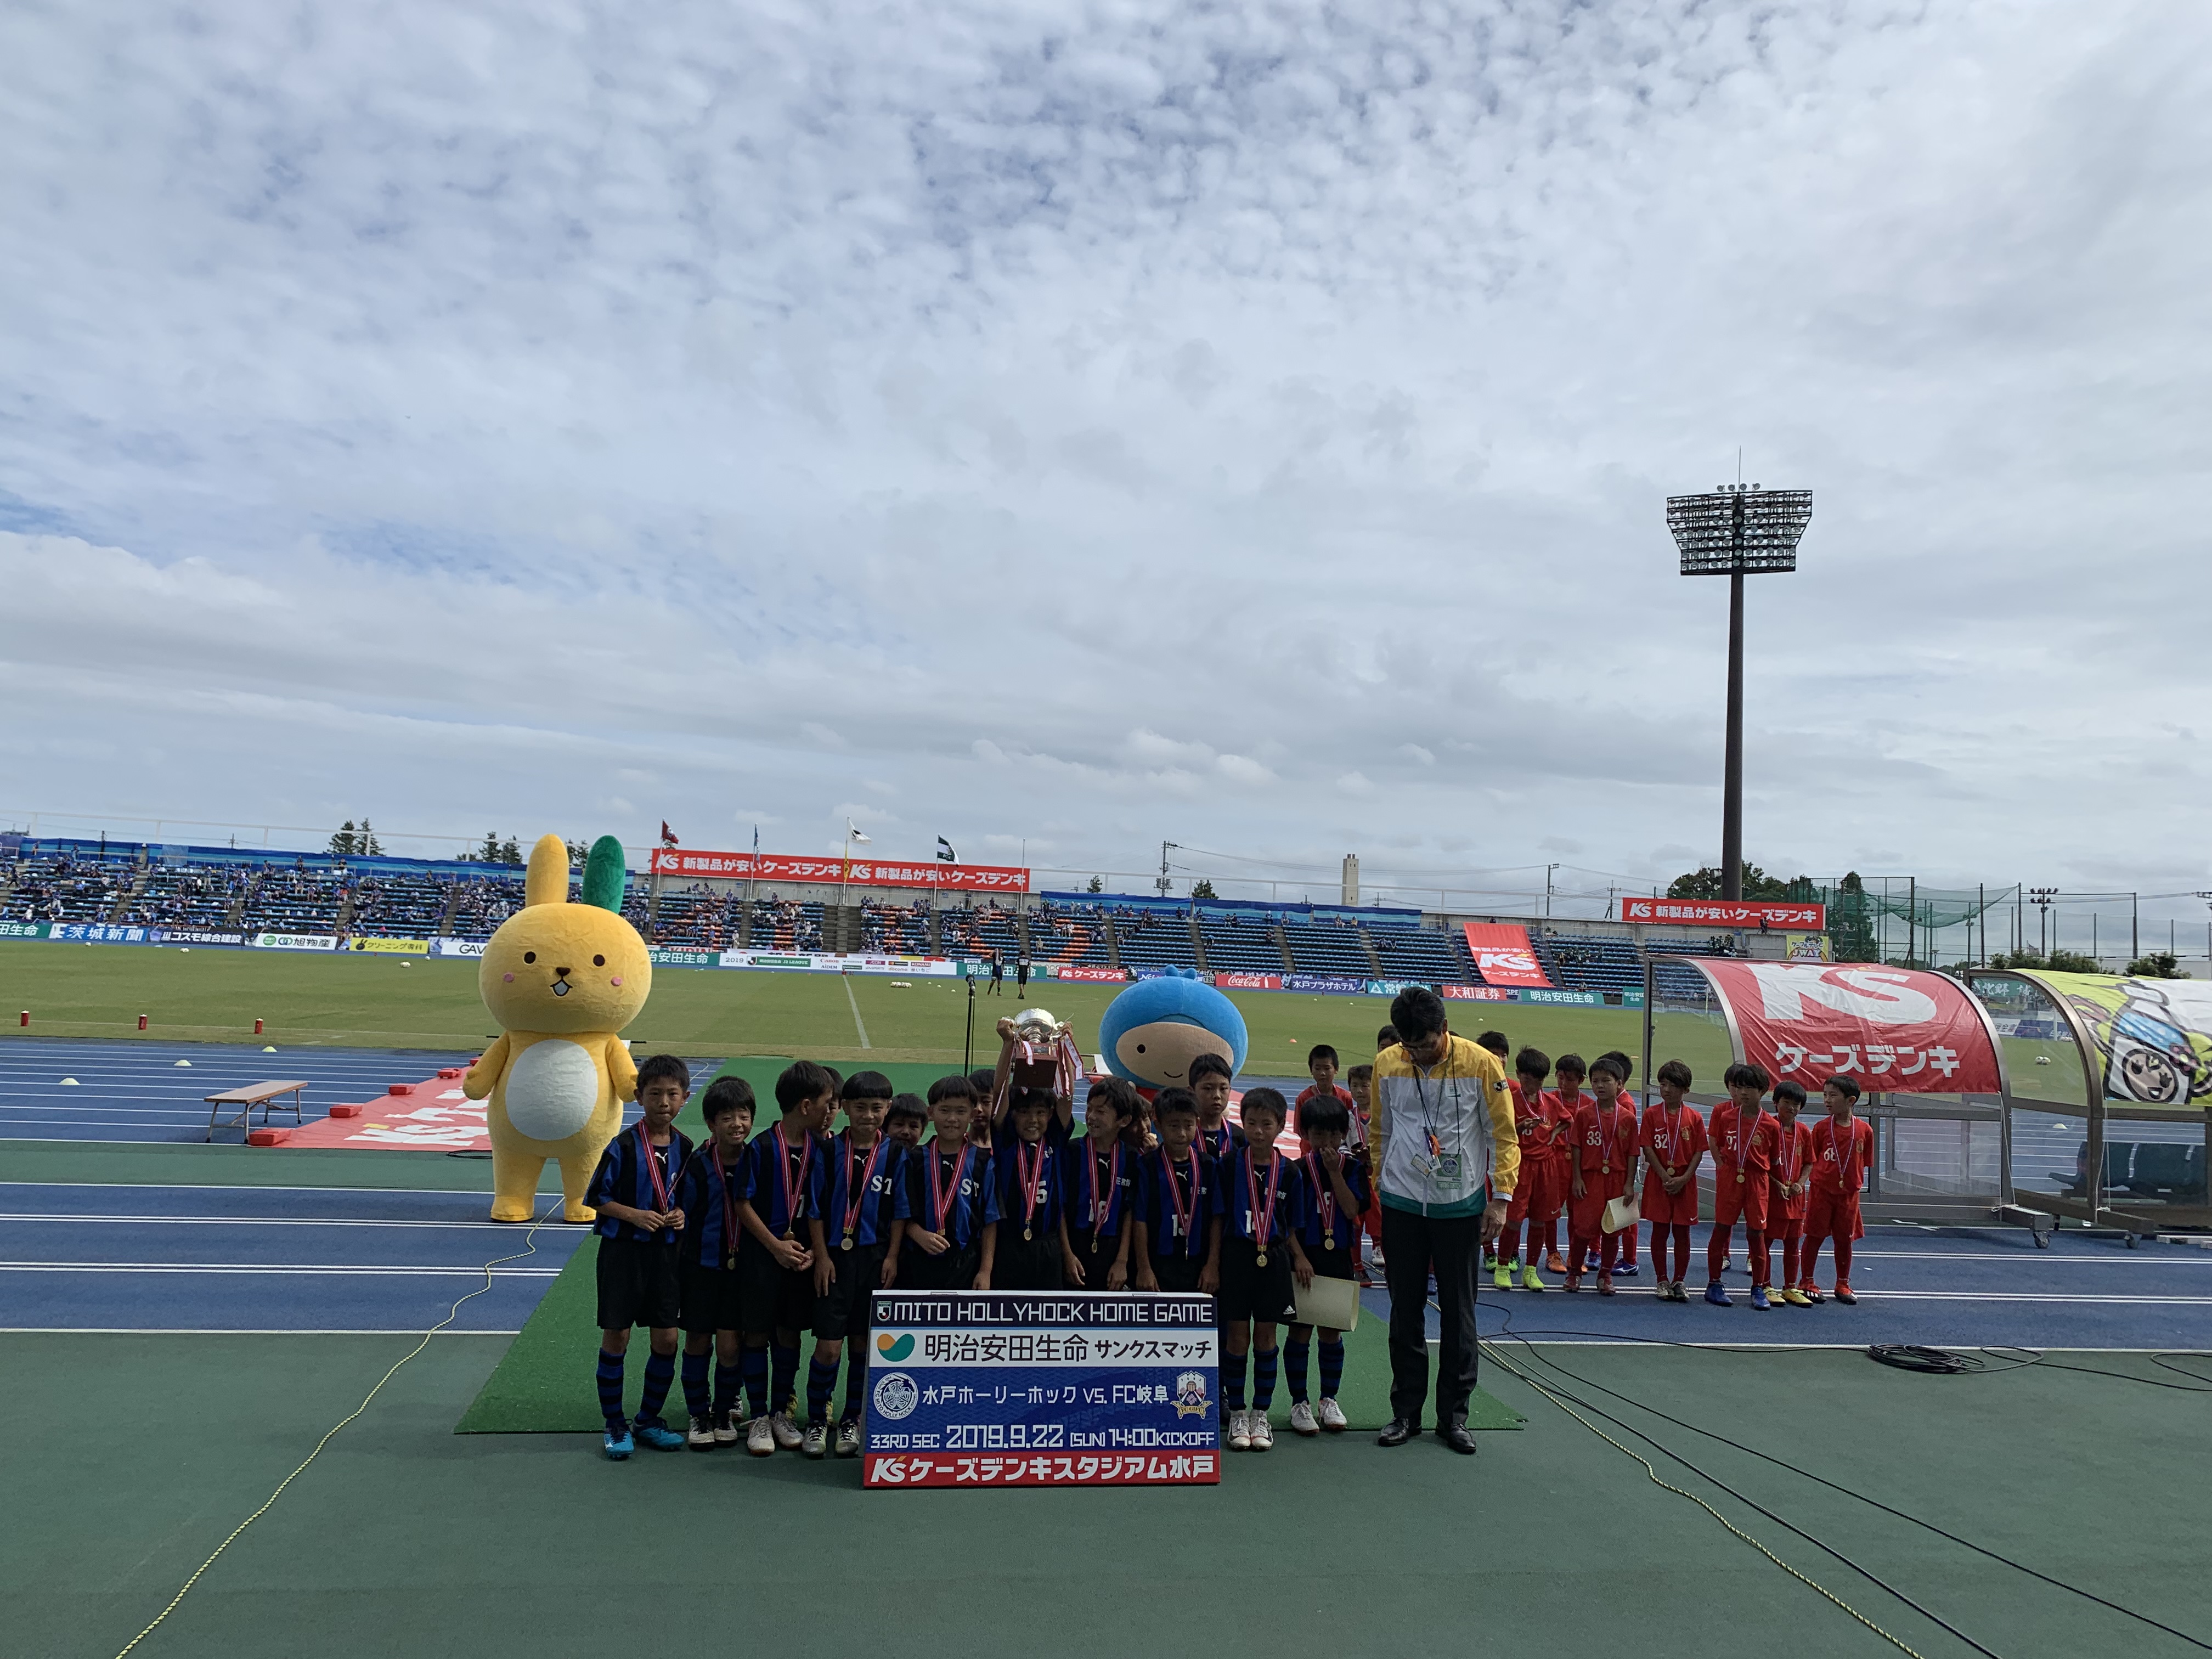 原博実の超現場日記19 第28回 水戸 栃木をはしご 北関東シリーズはホームチームが勝利 ｊリーグ